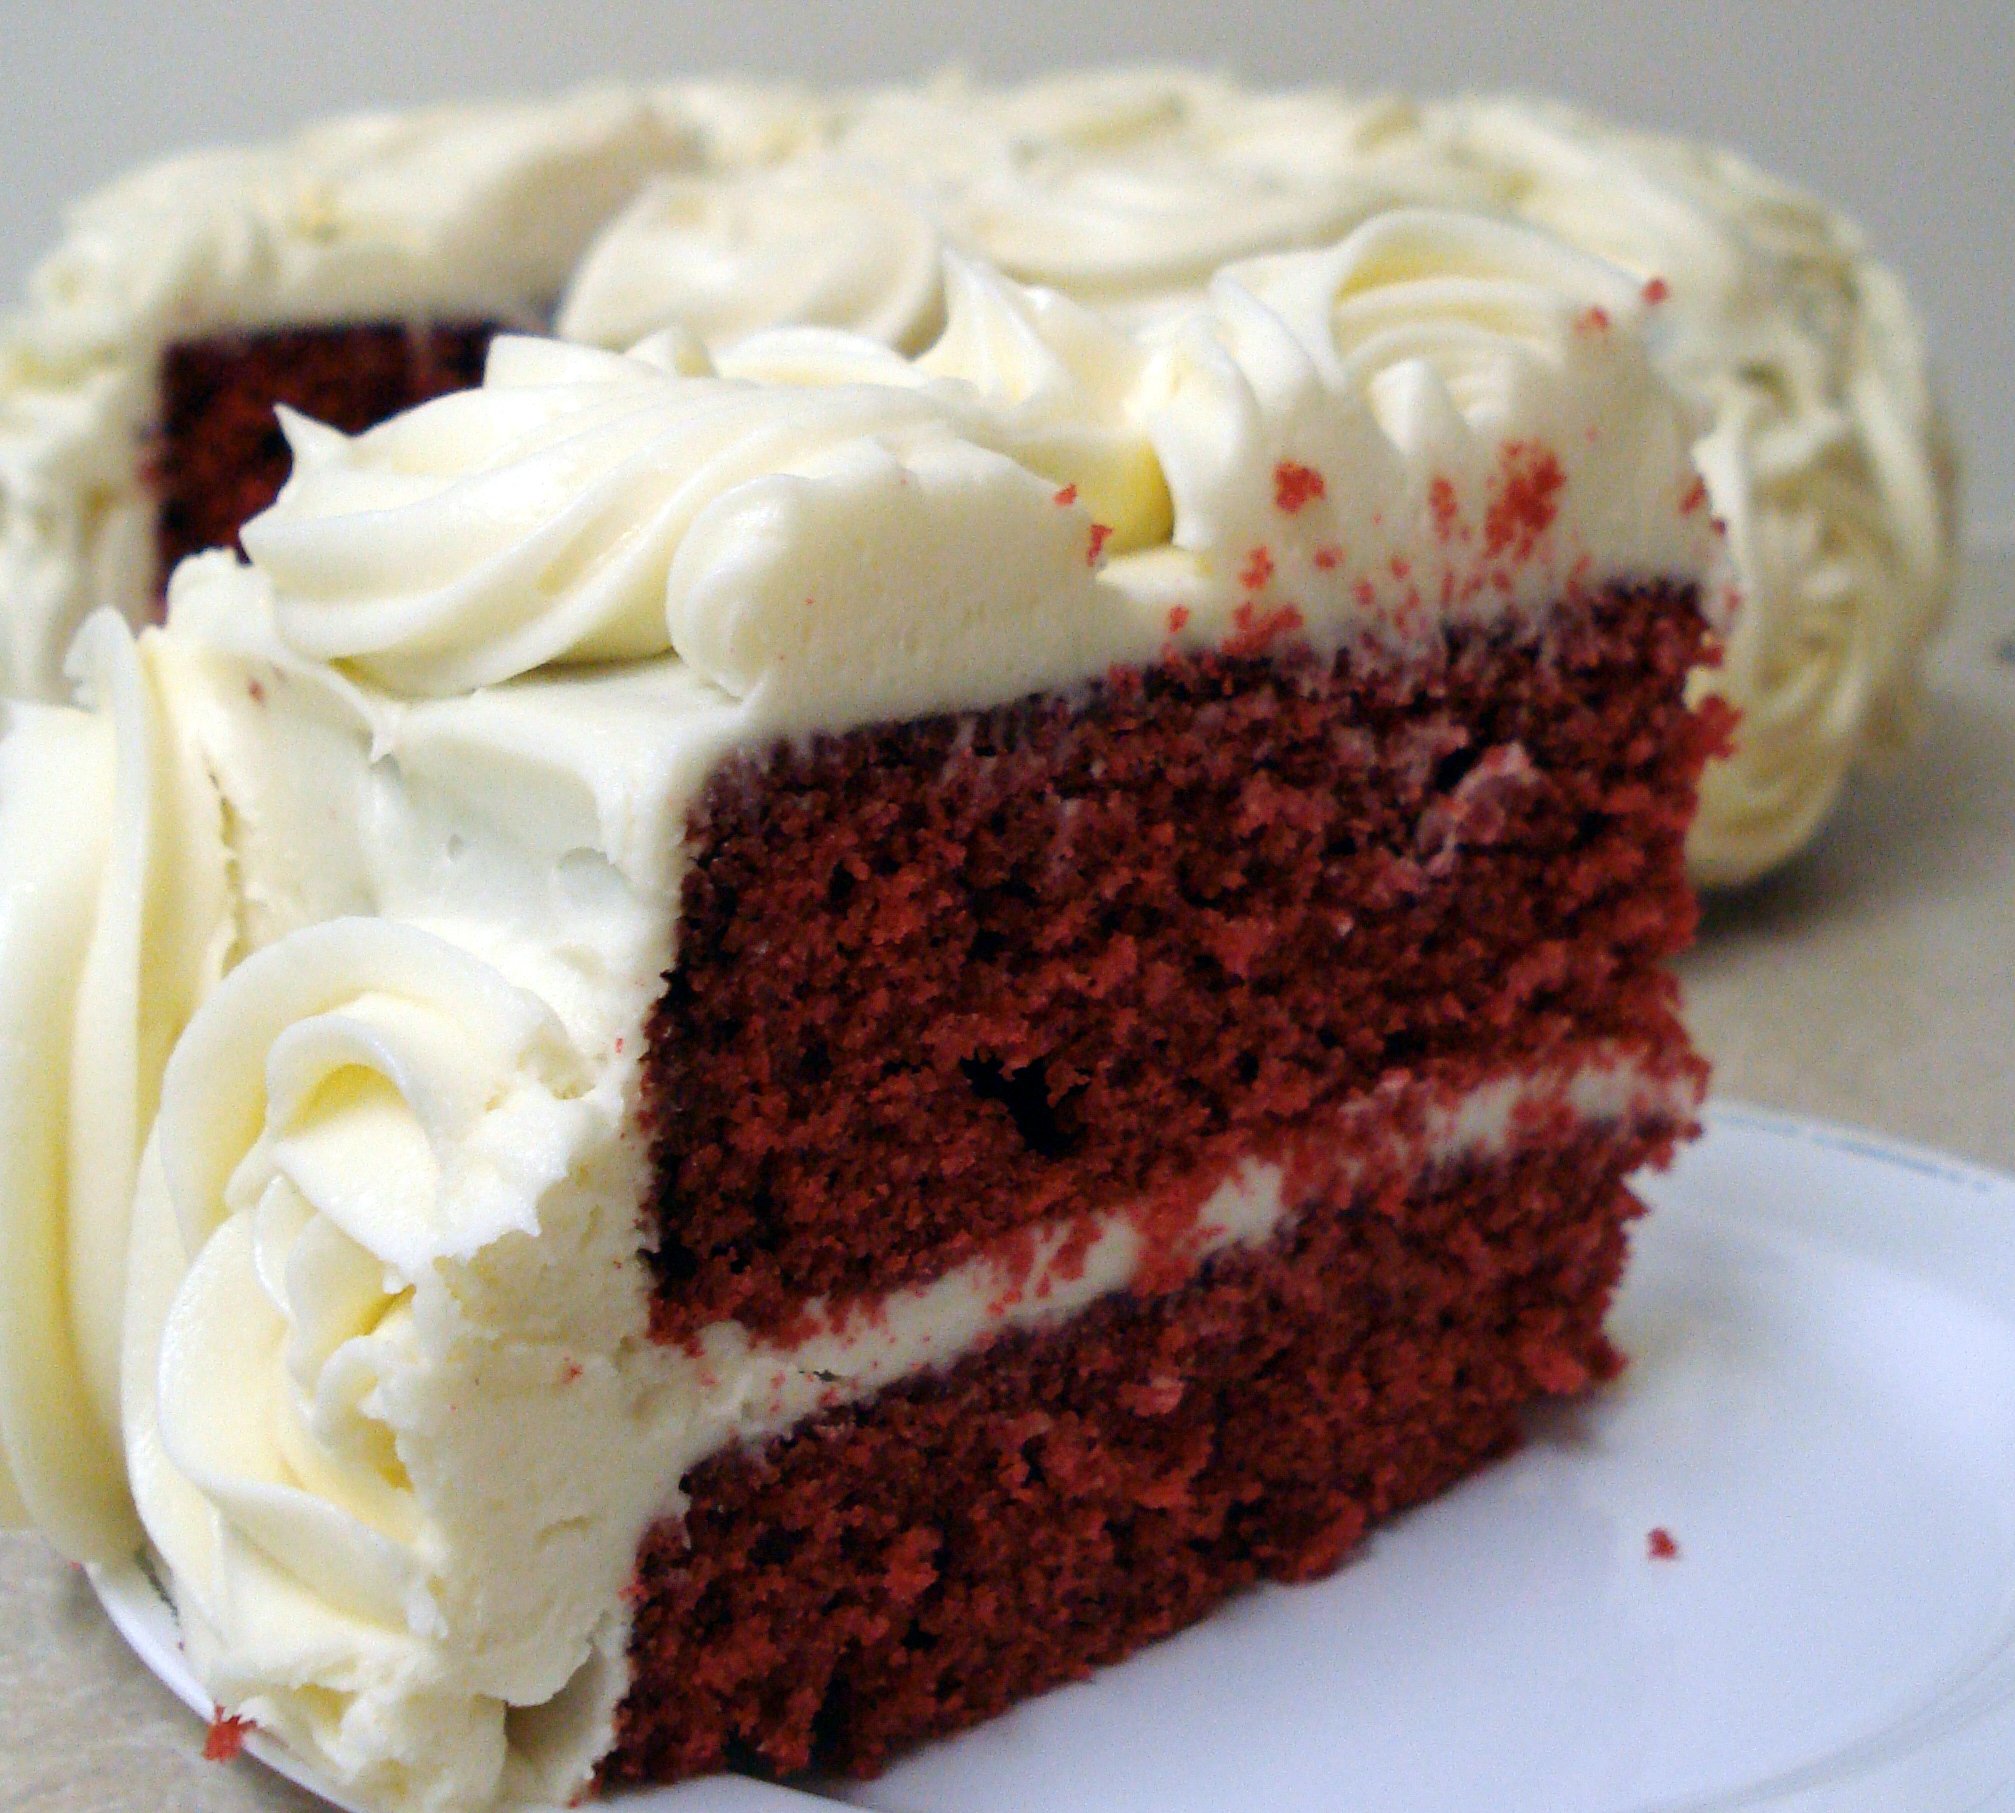 Red Velvet Cake, what is red velvet cake made of